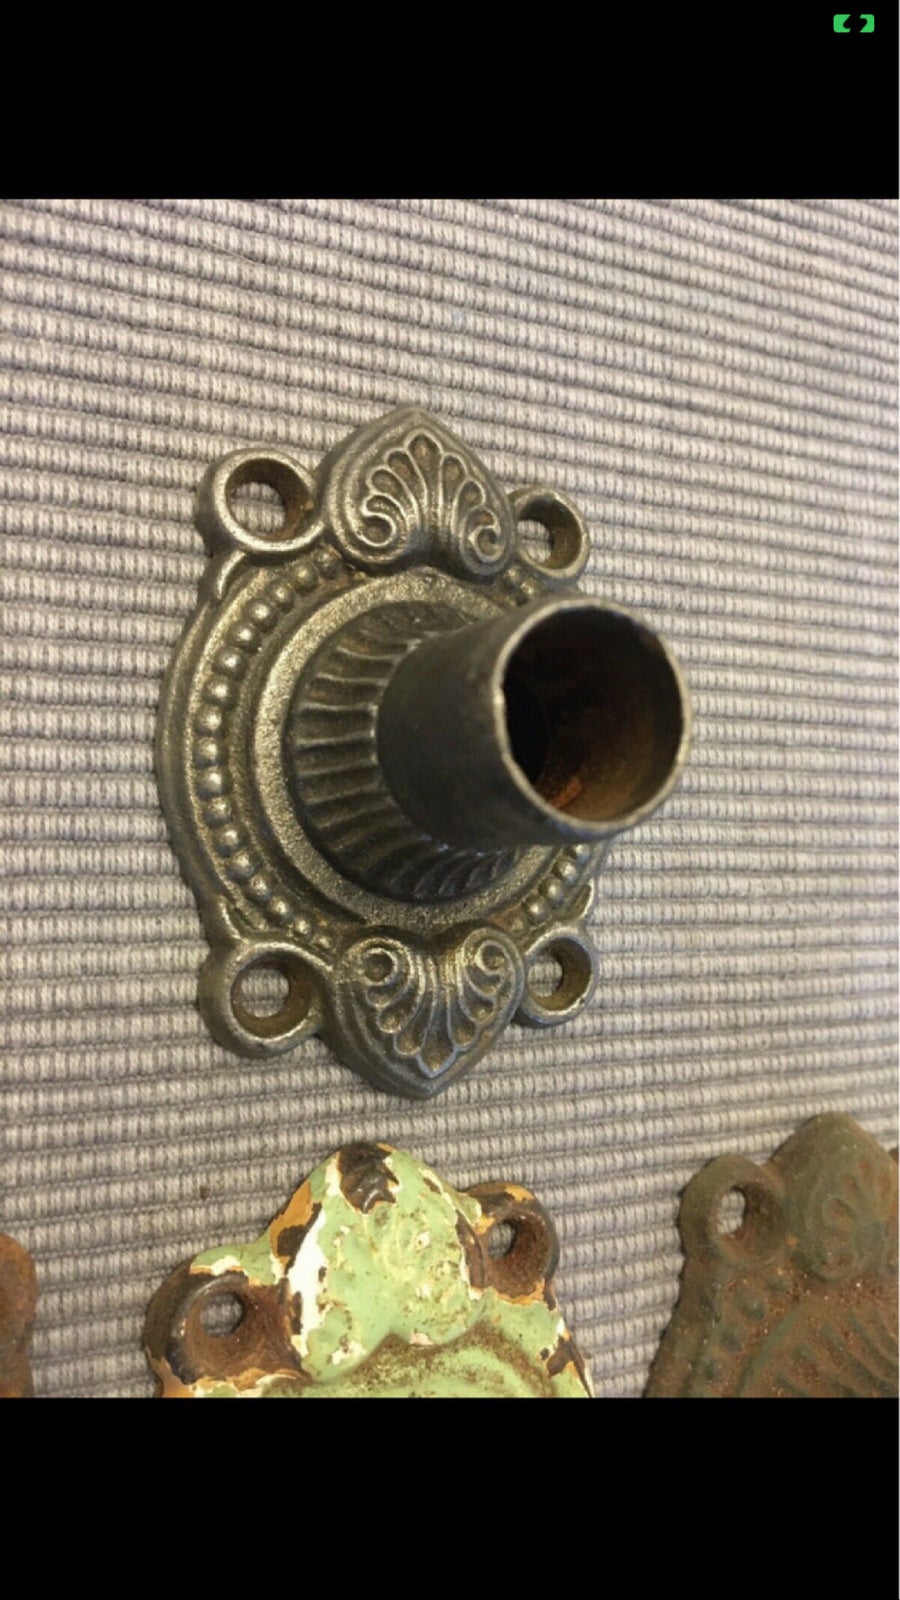 Smuk antik trompethals mm, 1800-tallet